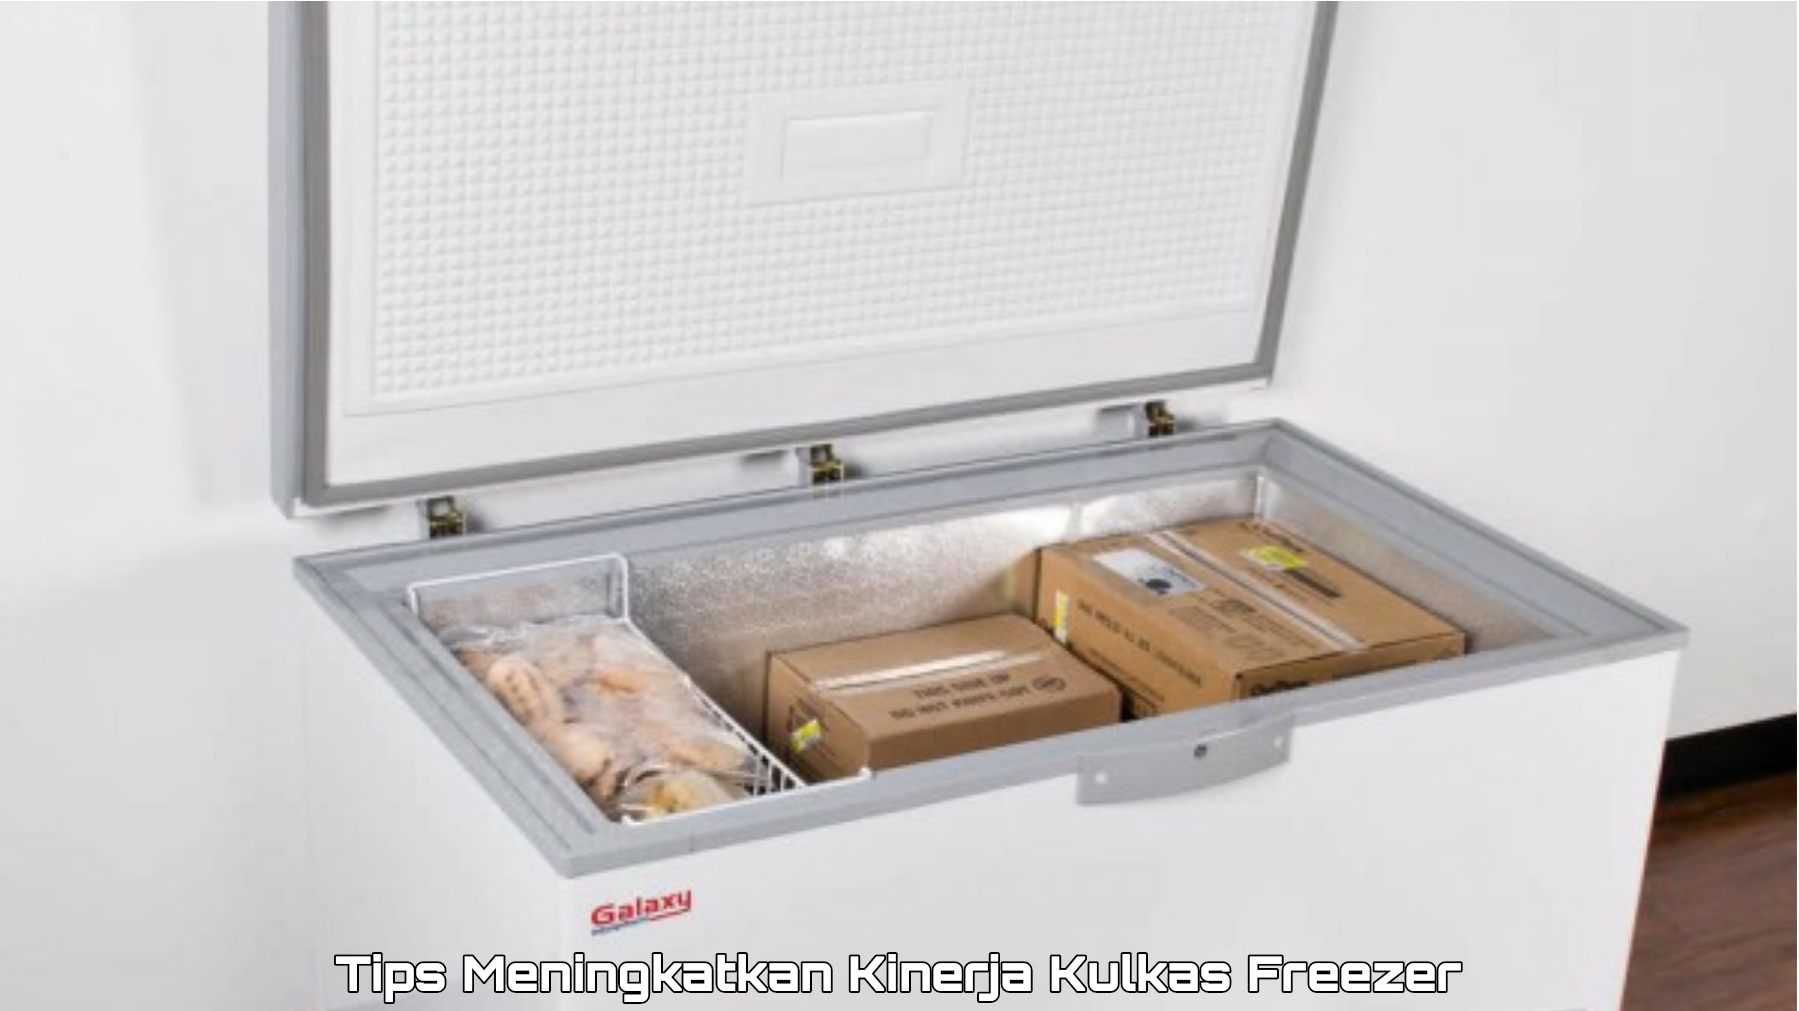 Pengaturan Suhu Tepat, Solusi Maksimalkan Kinerja Merek Kulkas Terbaik Jenis Freezer